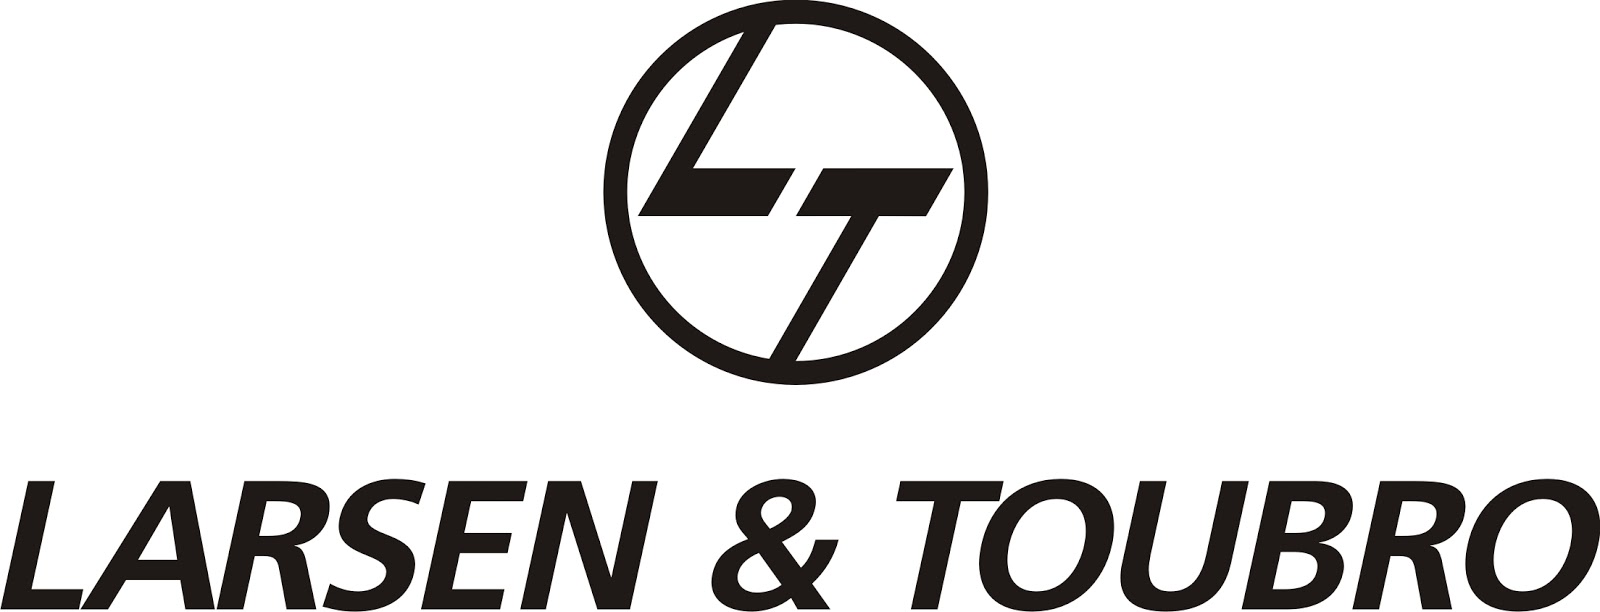 Larsen & Toubro Brand Logo